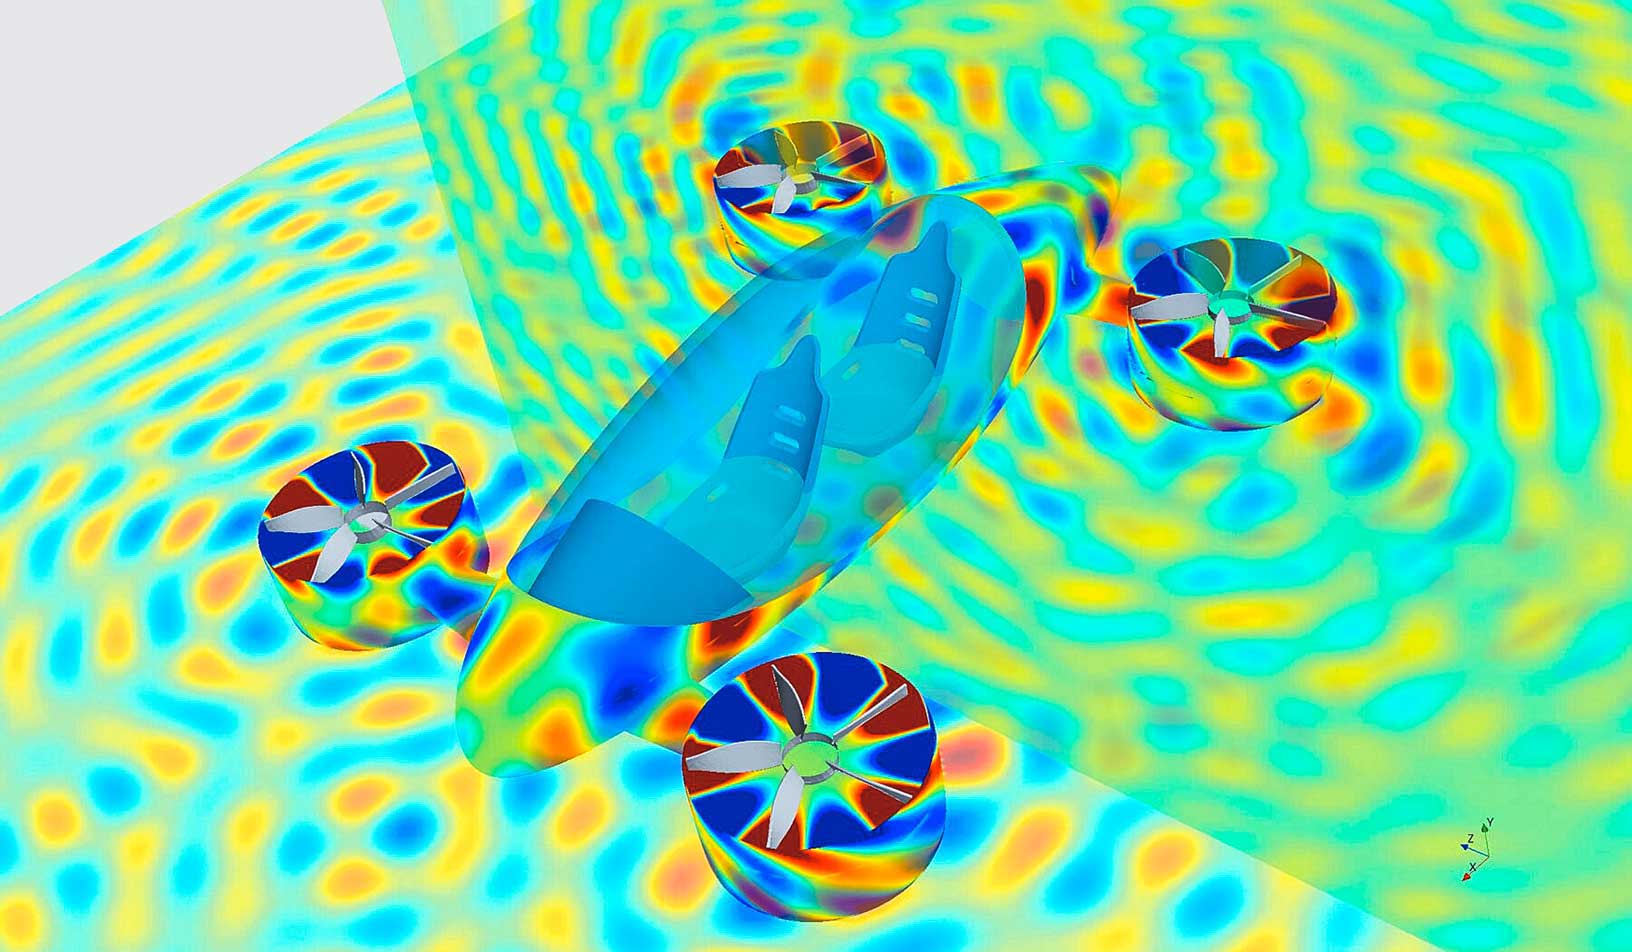 Aeroakustische Simulation eines eVTOL